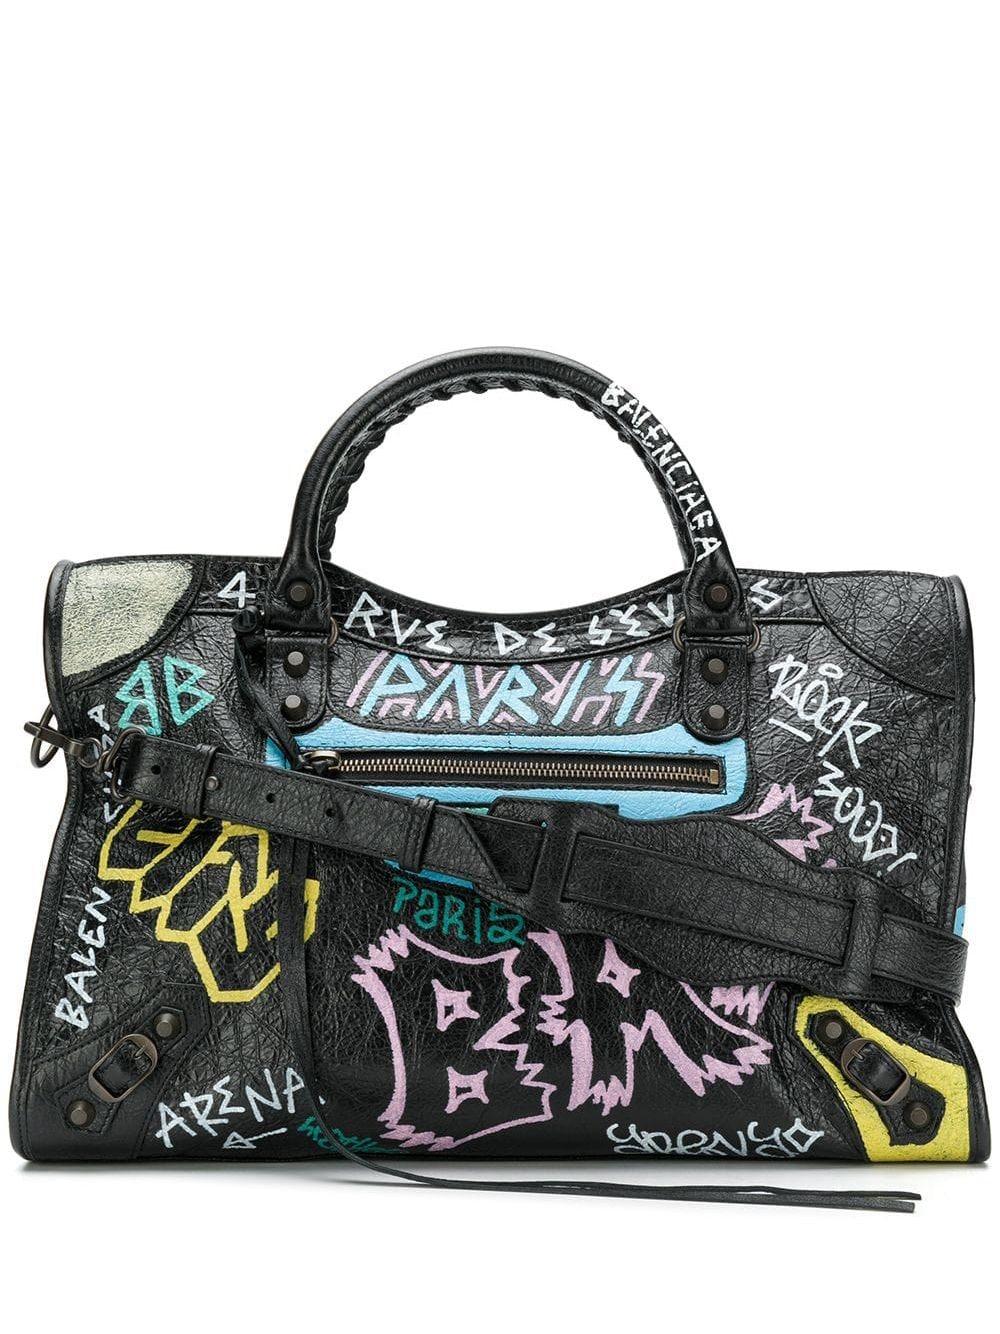 Balenciaga Classic City S Bag Graffiti in Black